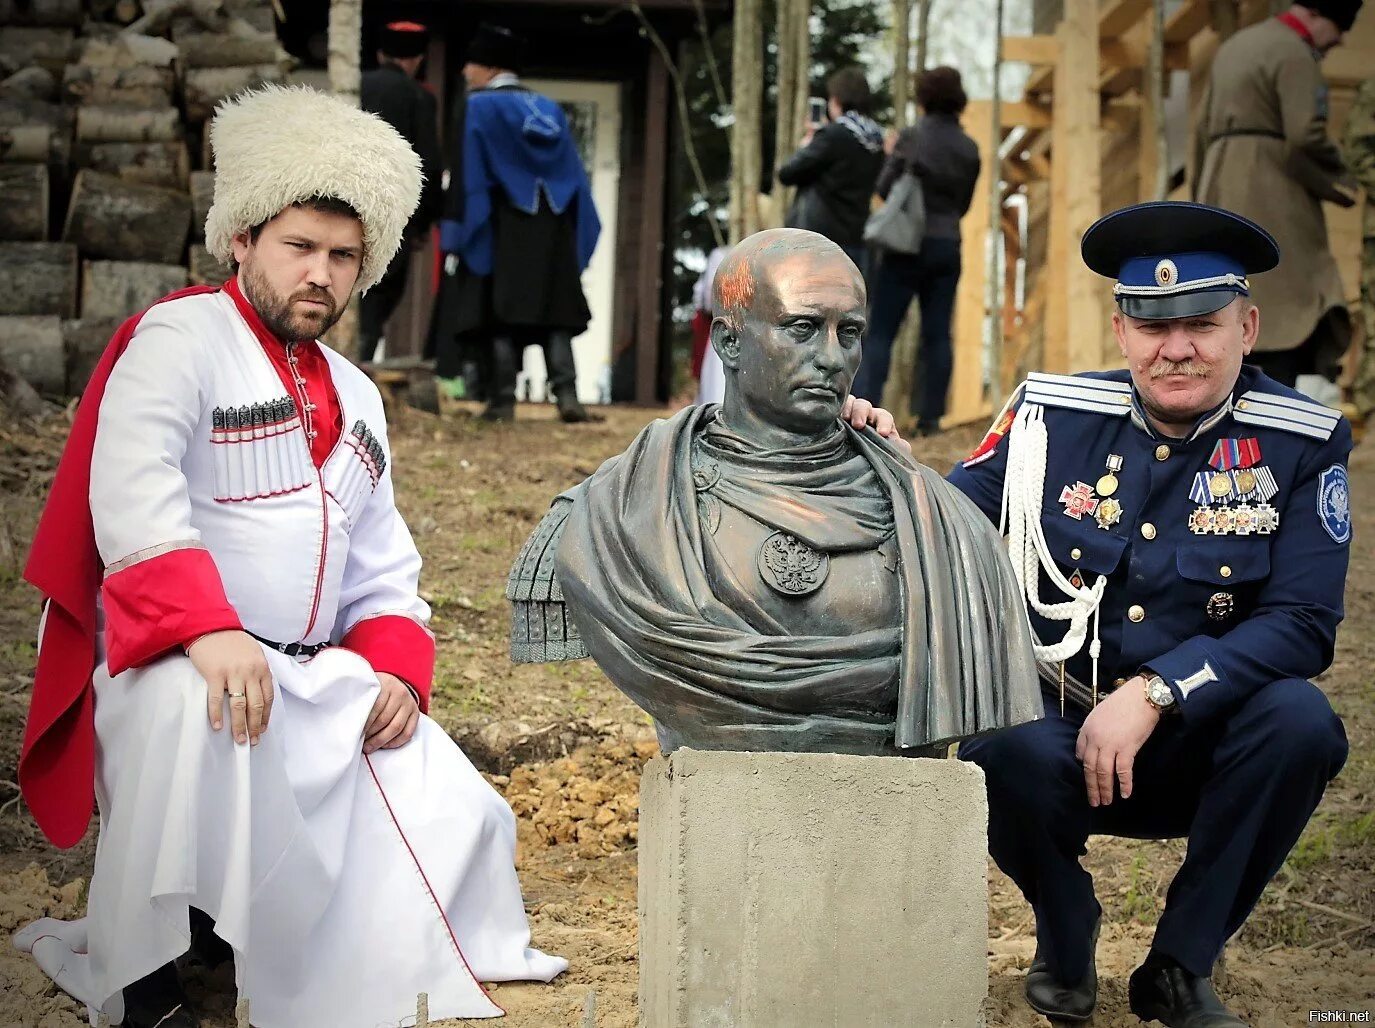 Казаки Кубани ряженые. Бюст Путина в образе Римского императора. Кизяки казаки. Ряженые кизяки. Как вы думаете почему казаки придавали большое